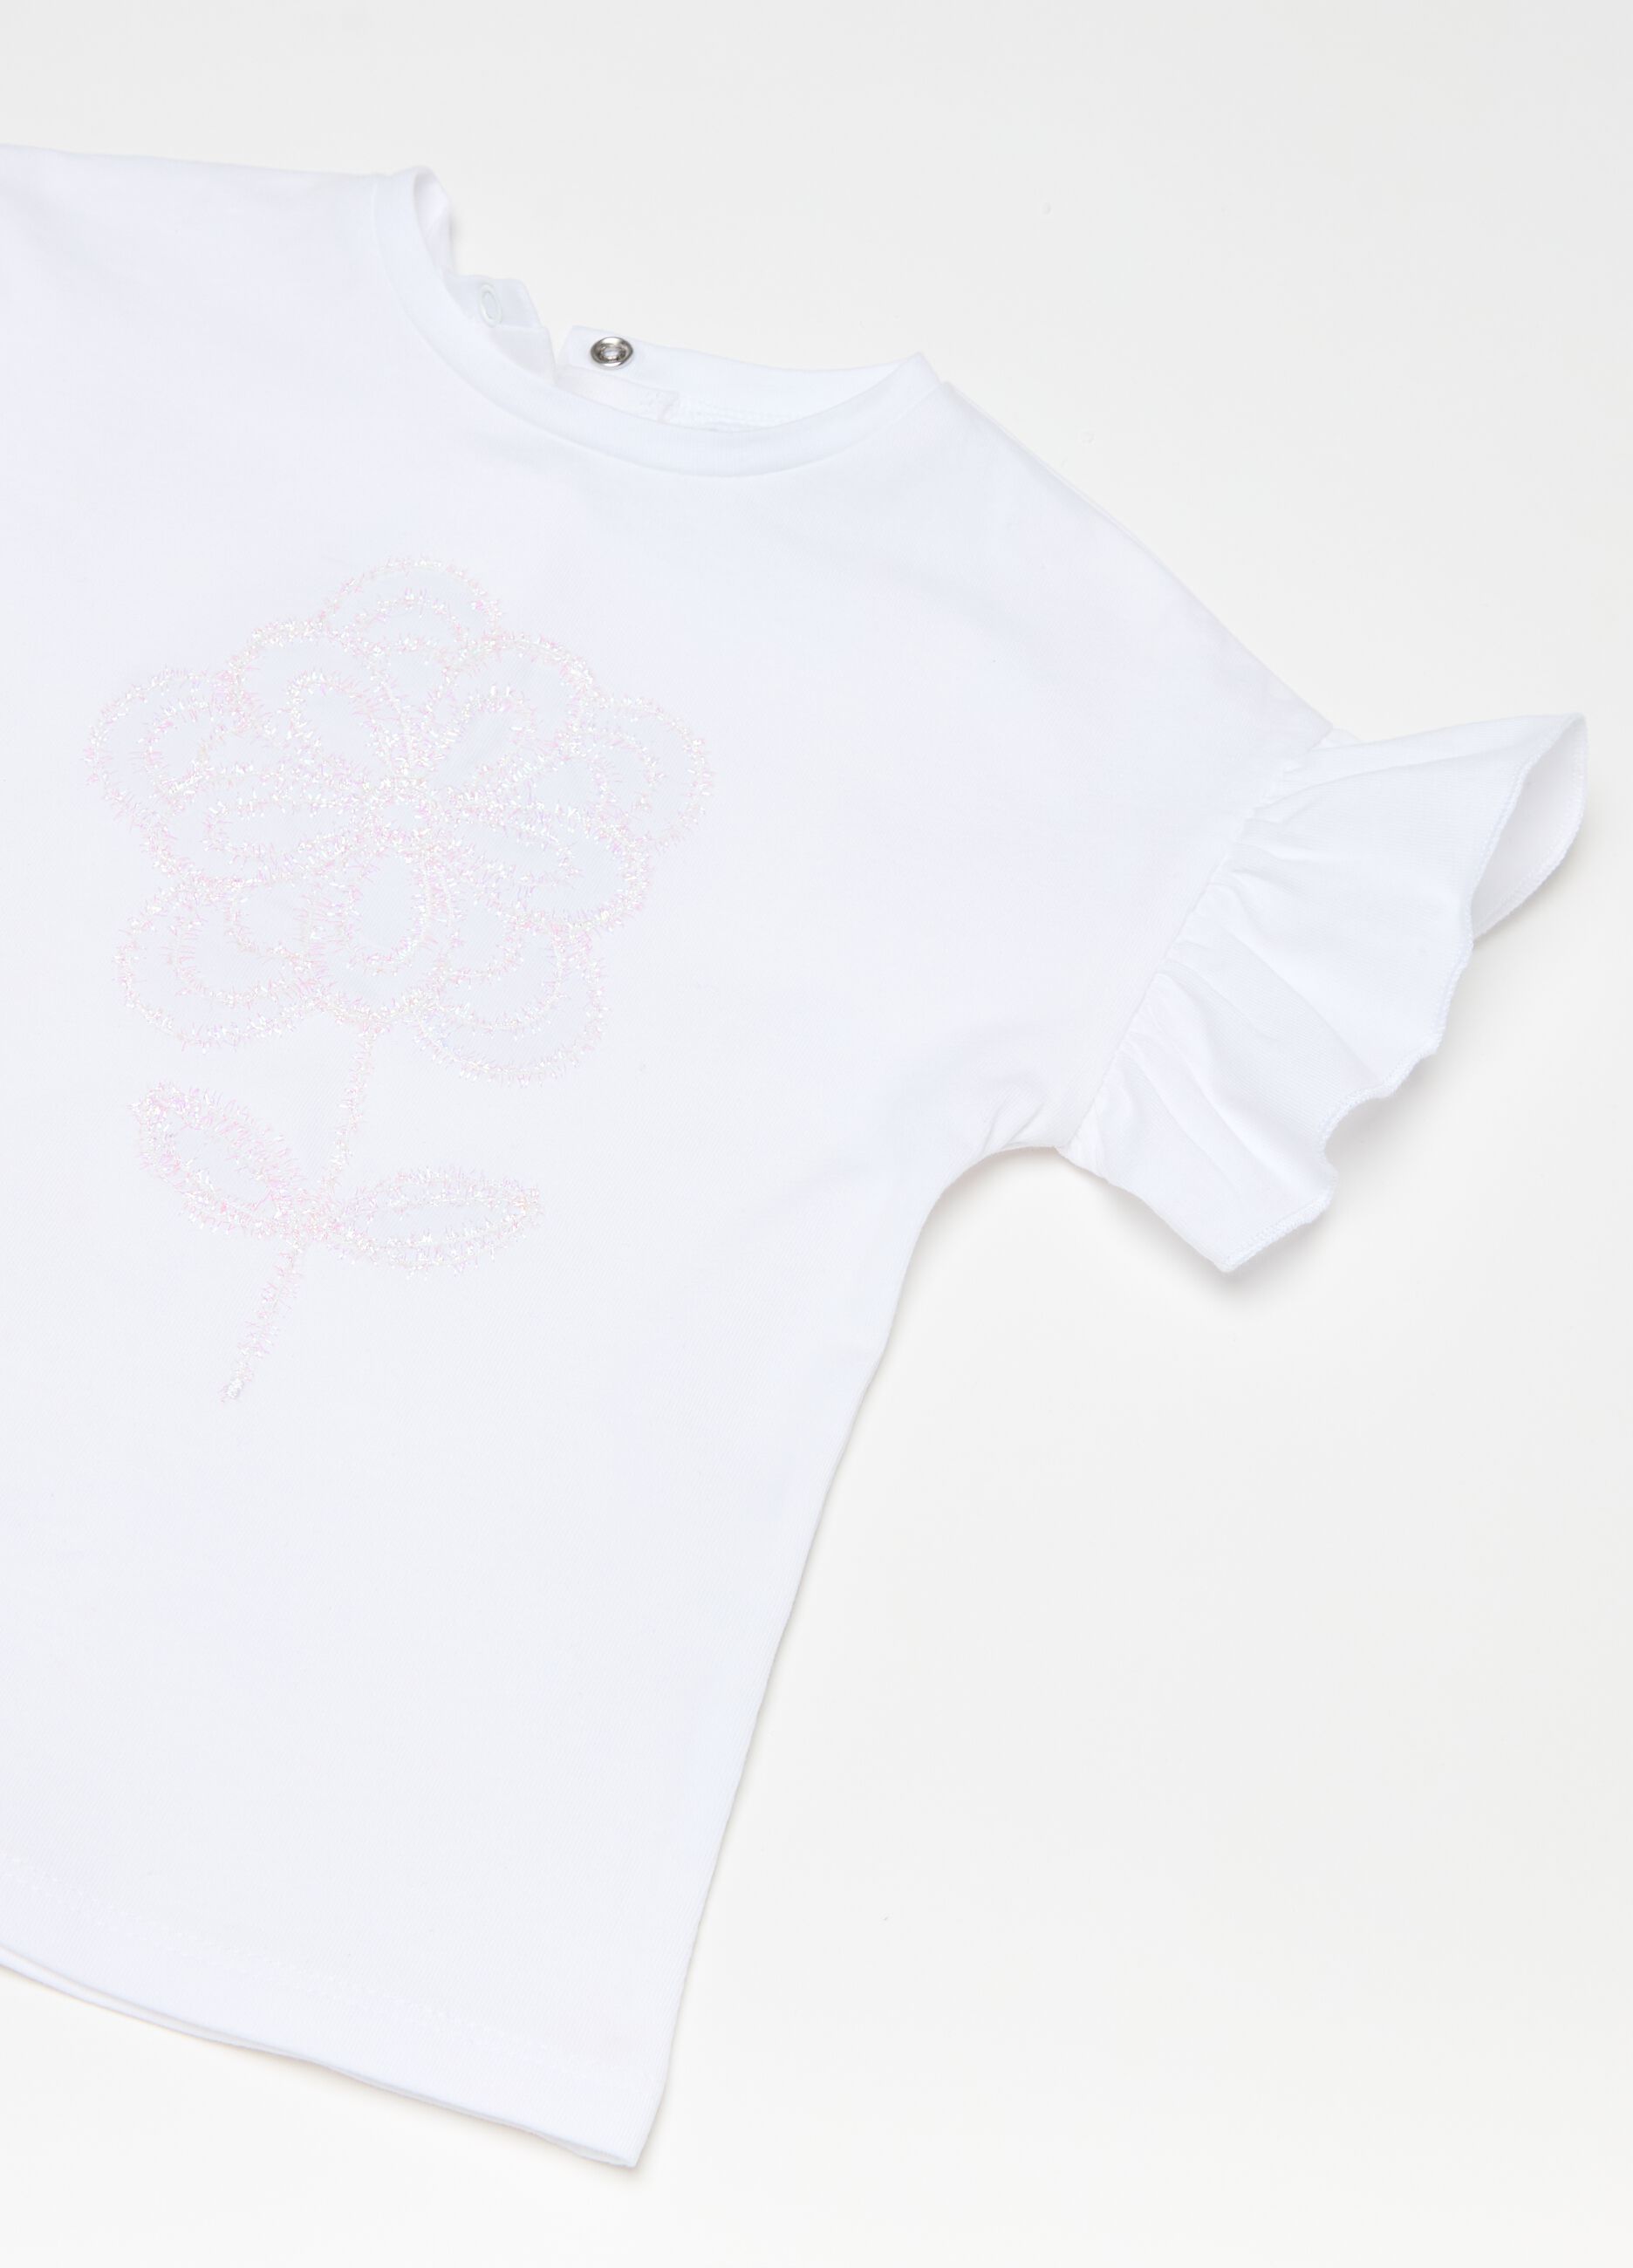 T-shirt con applicazione fiore